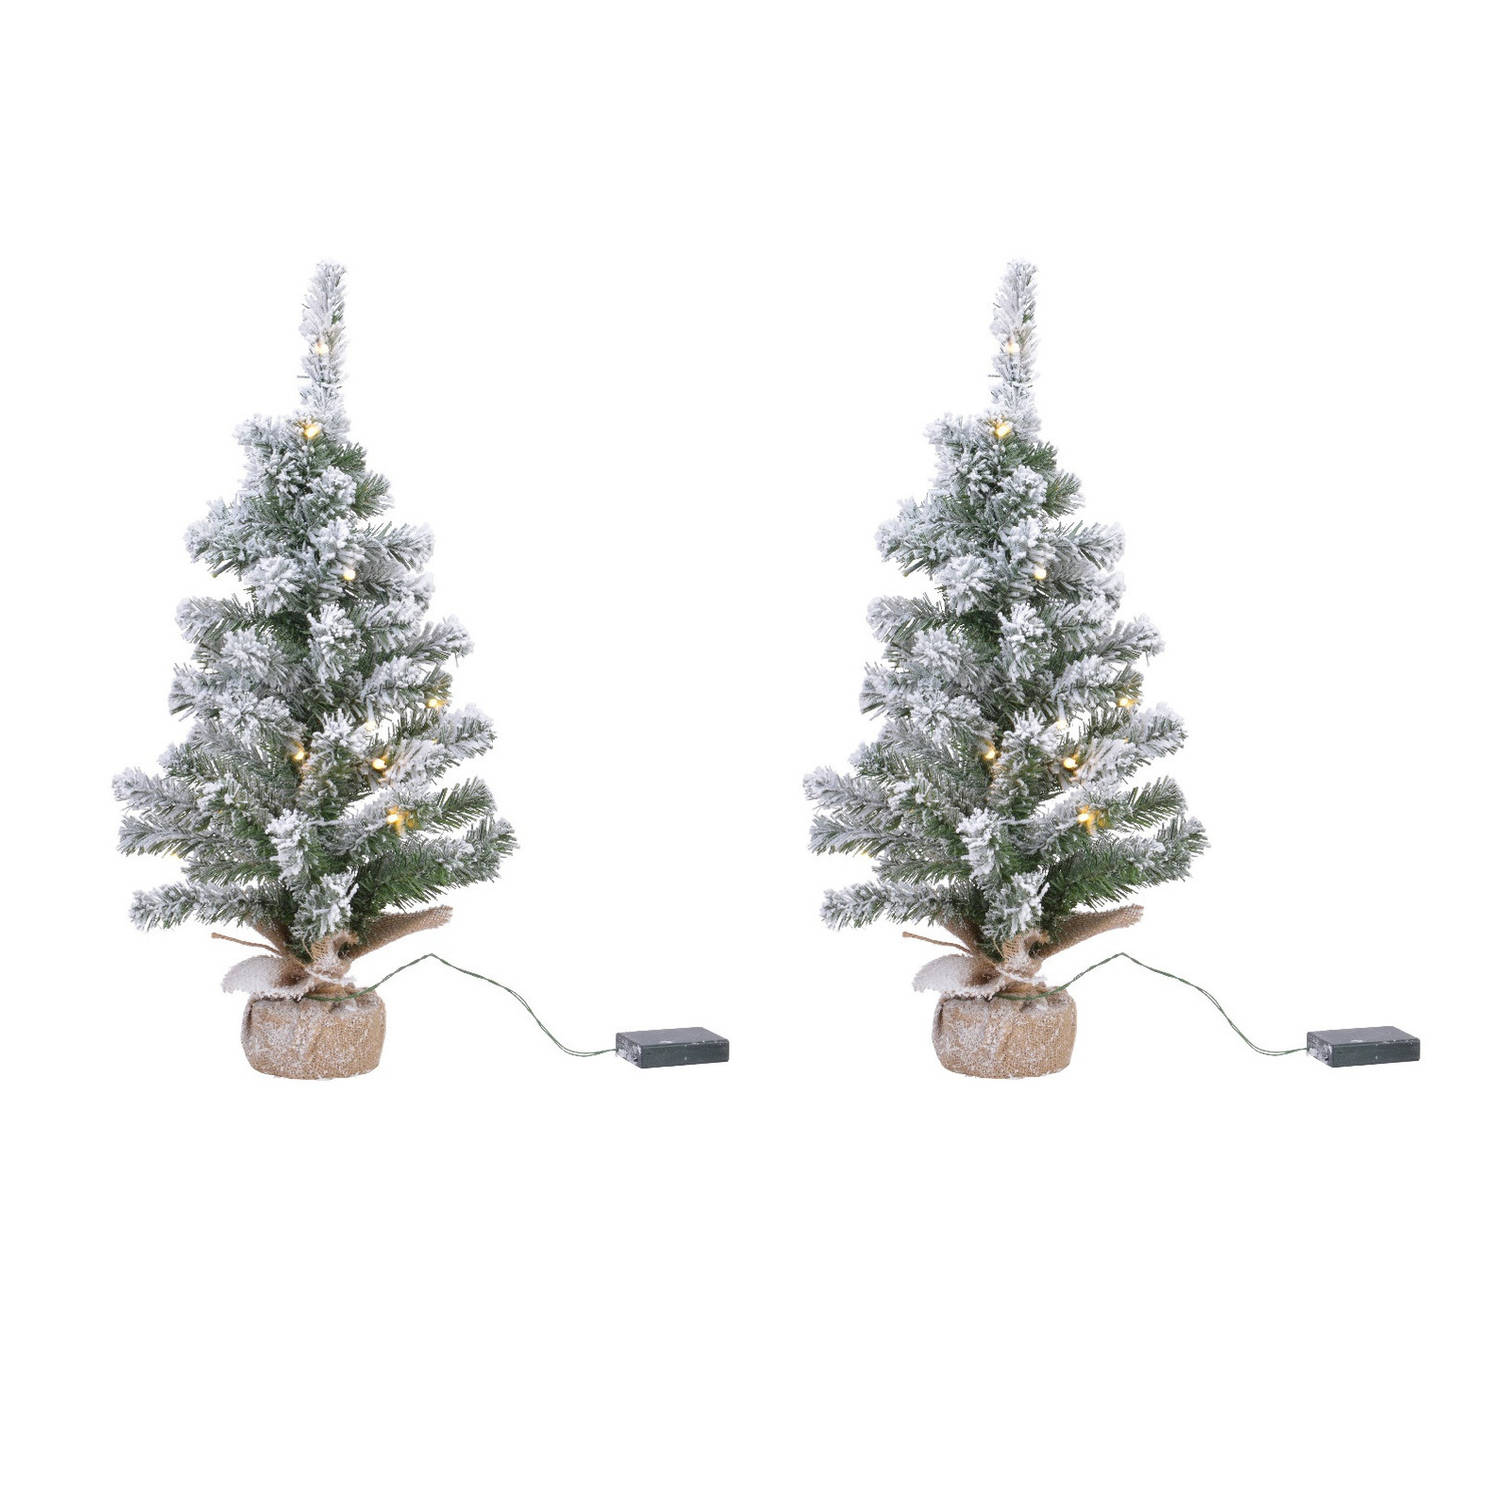 2x stuks kunstboom-kunst kerstboom met sneeuw en licht 75 cm Kunstkerstboom